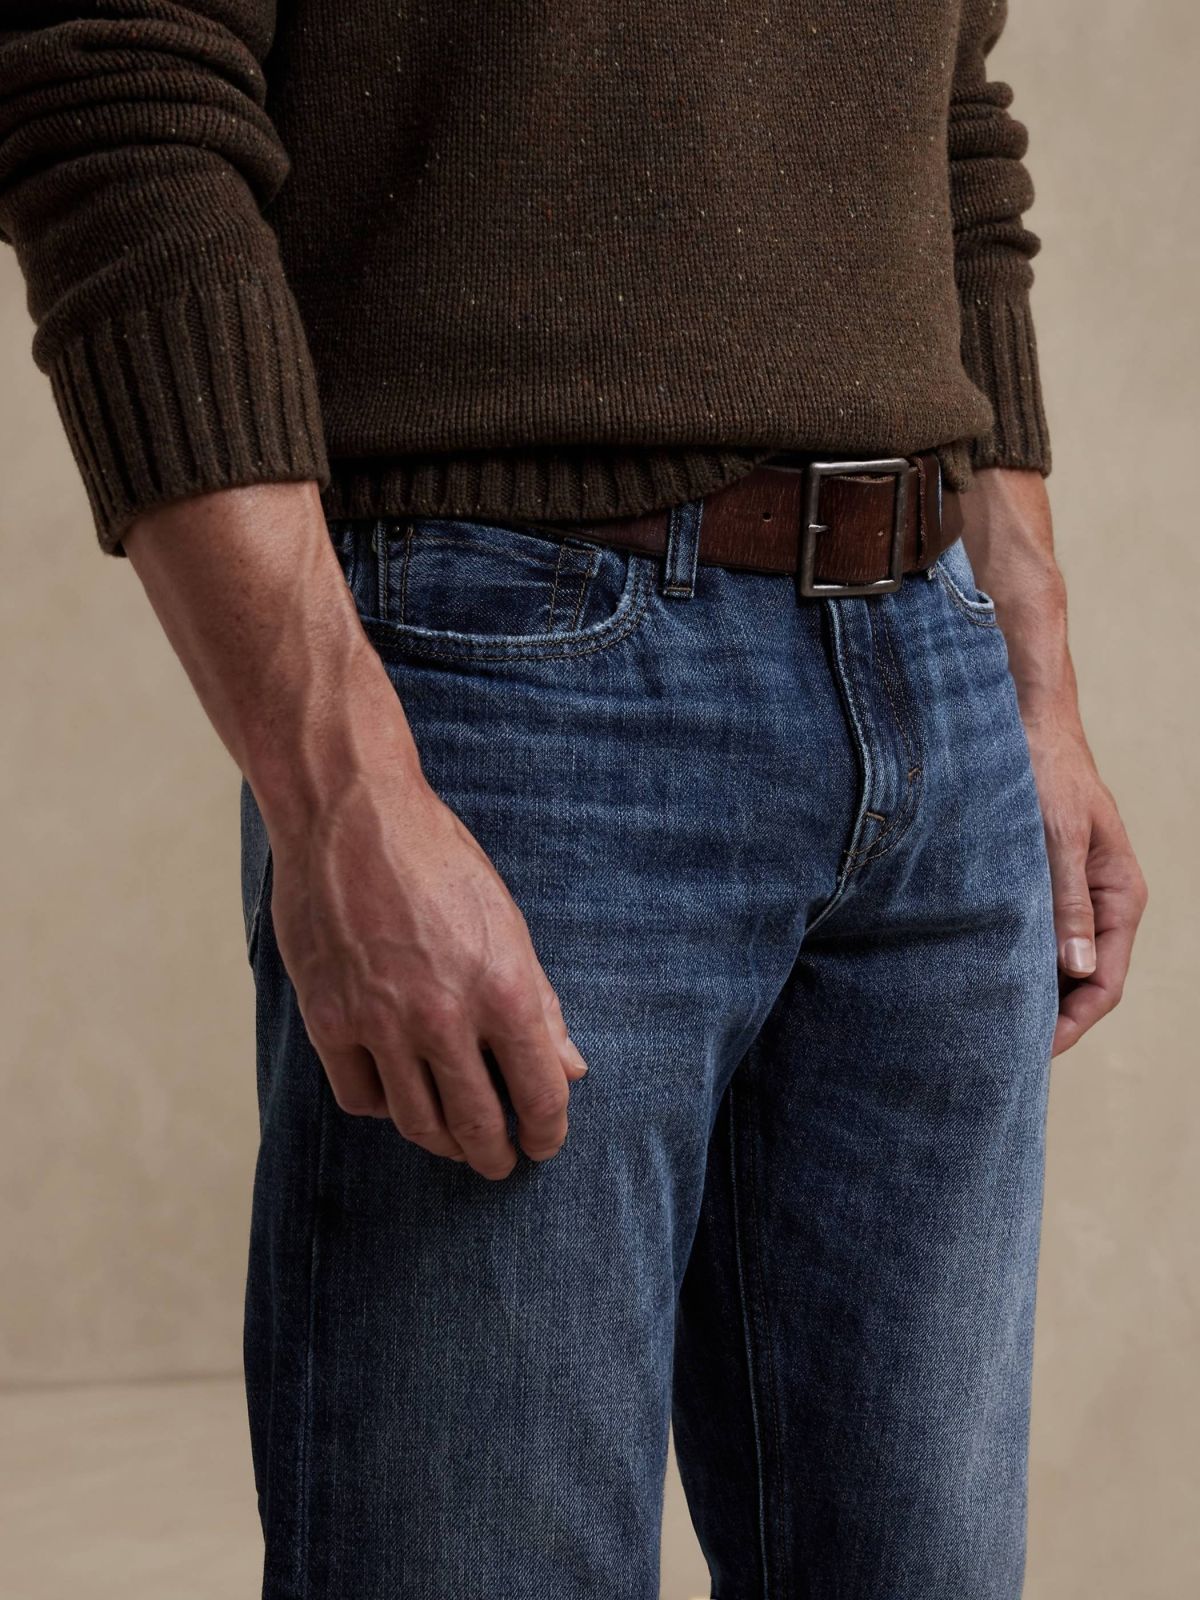  ג'ינס ארוך בגזרה ישרה של BANANA REPUBLIC